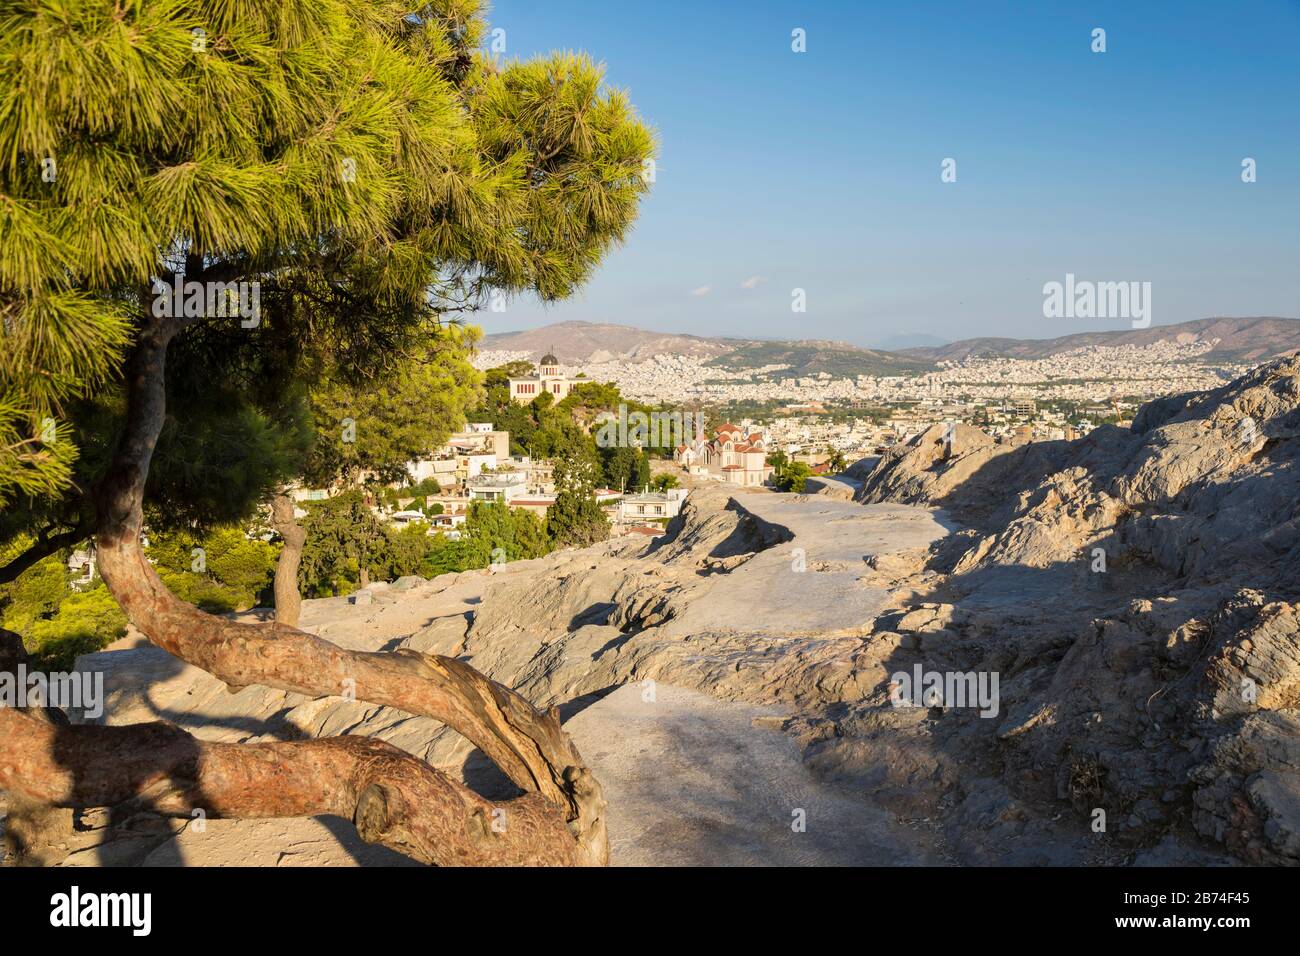 Blick auf Athen von Areopagus. Berühmte Orte in Athen - Hauptstadt Griechenlands. Antike Denkmäler. Stockfoto